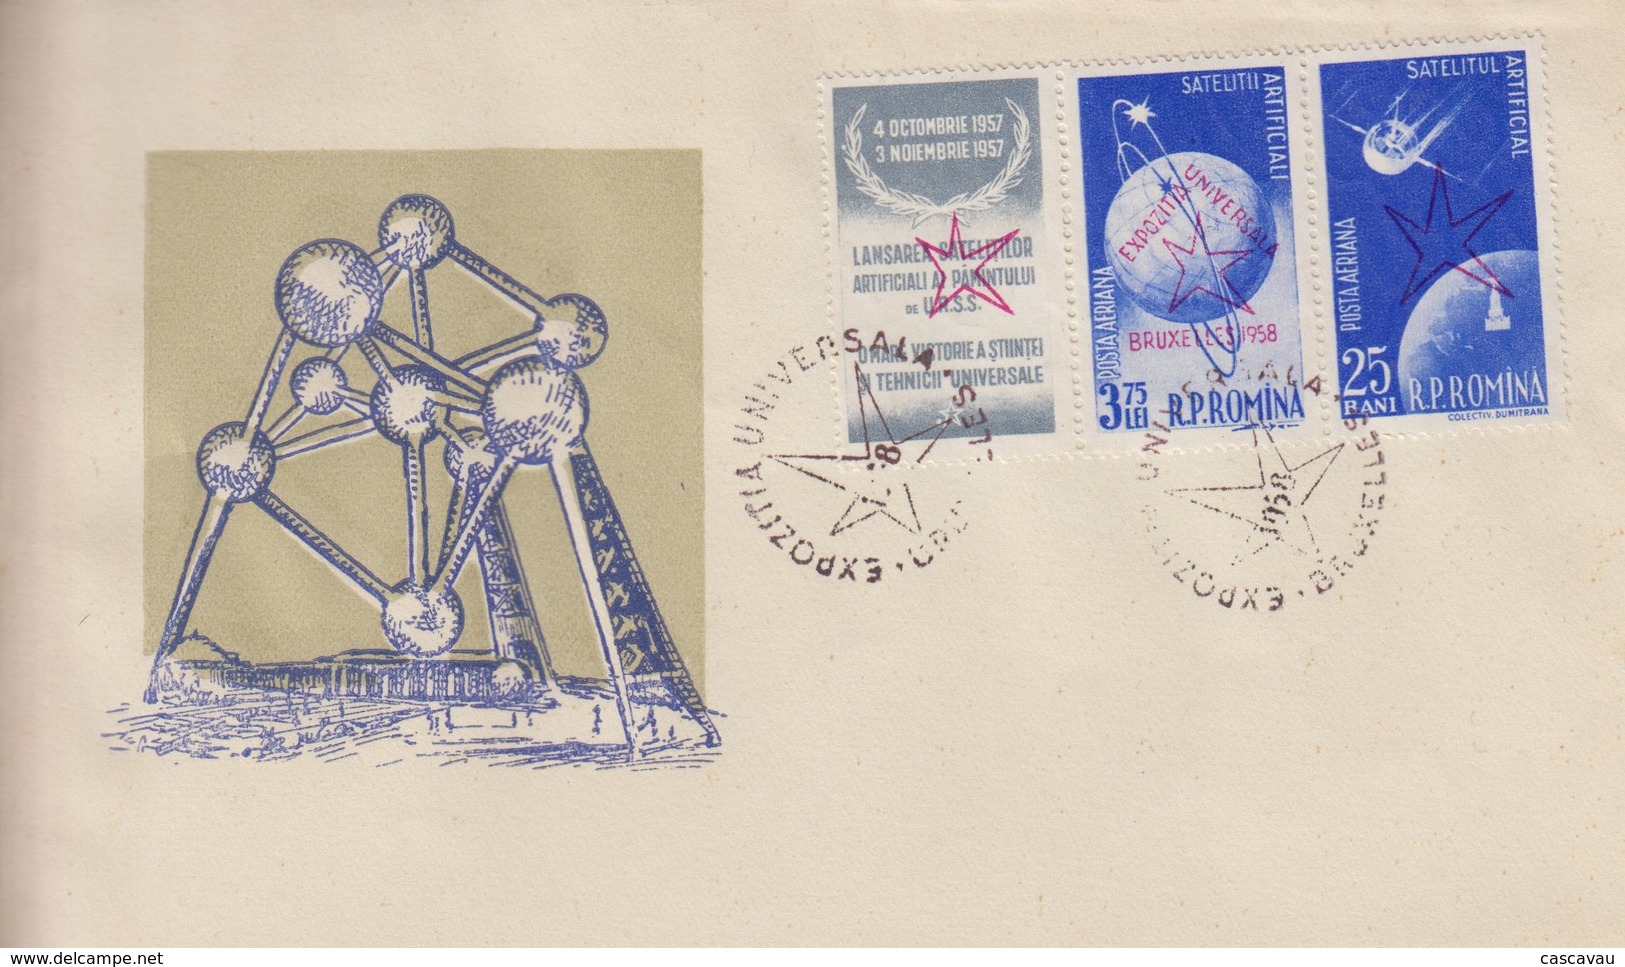 Enveloppe  FDC  1er Jour   ROUMANIE     Exposition  Universelle  BRUXELLES   1958 - 1958 – Bruxelles (Belgio)